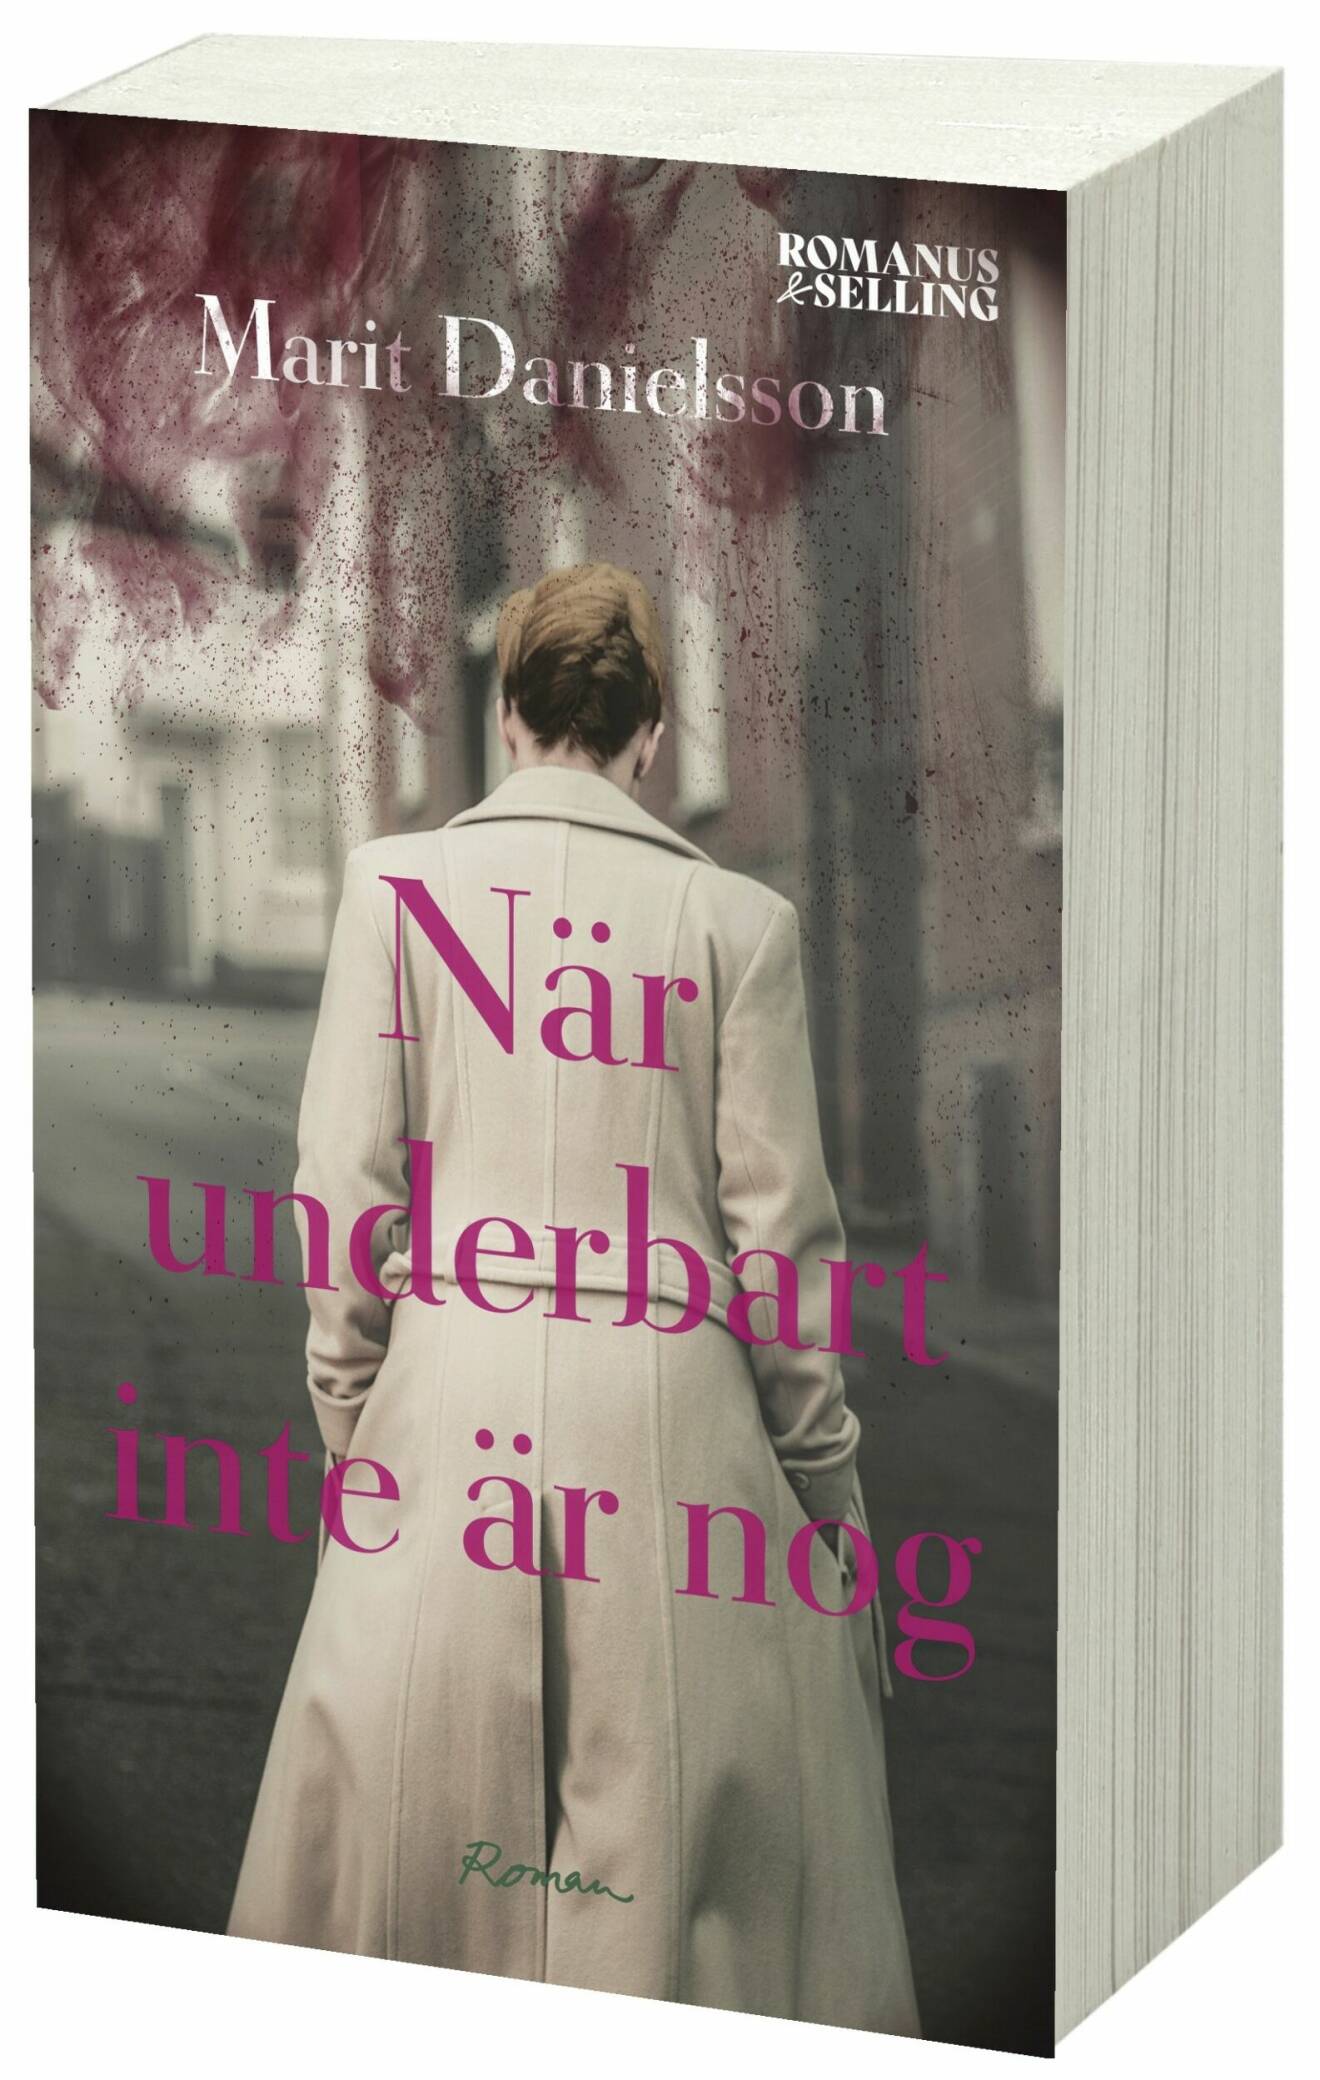 När underbart inte är nog av Marit Danielsson.